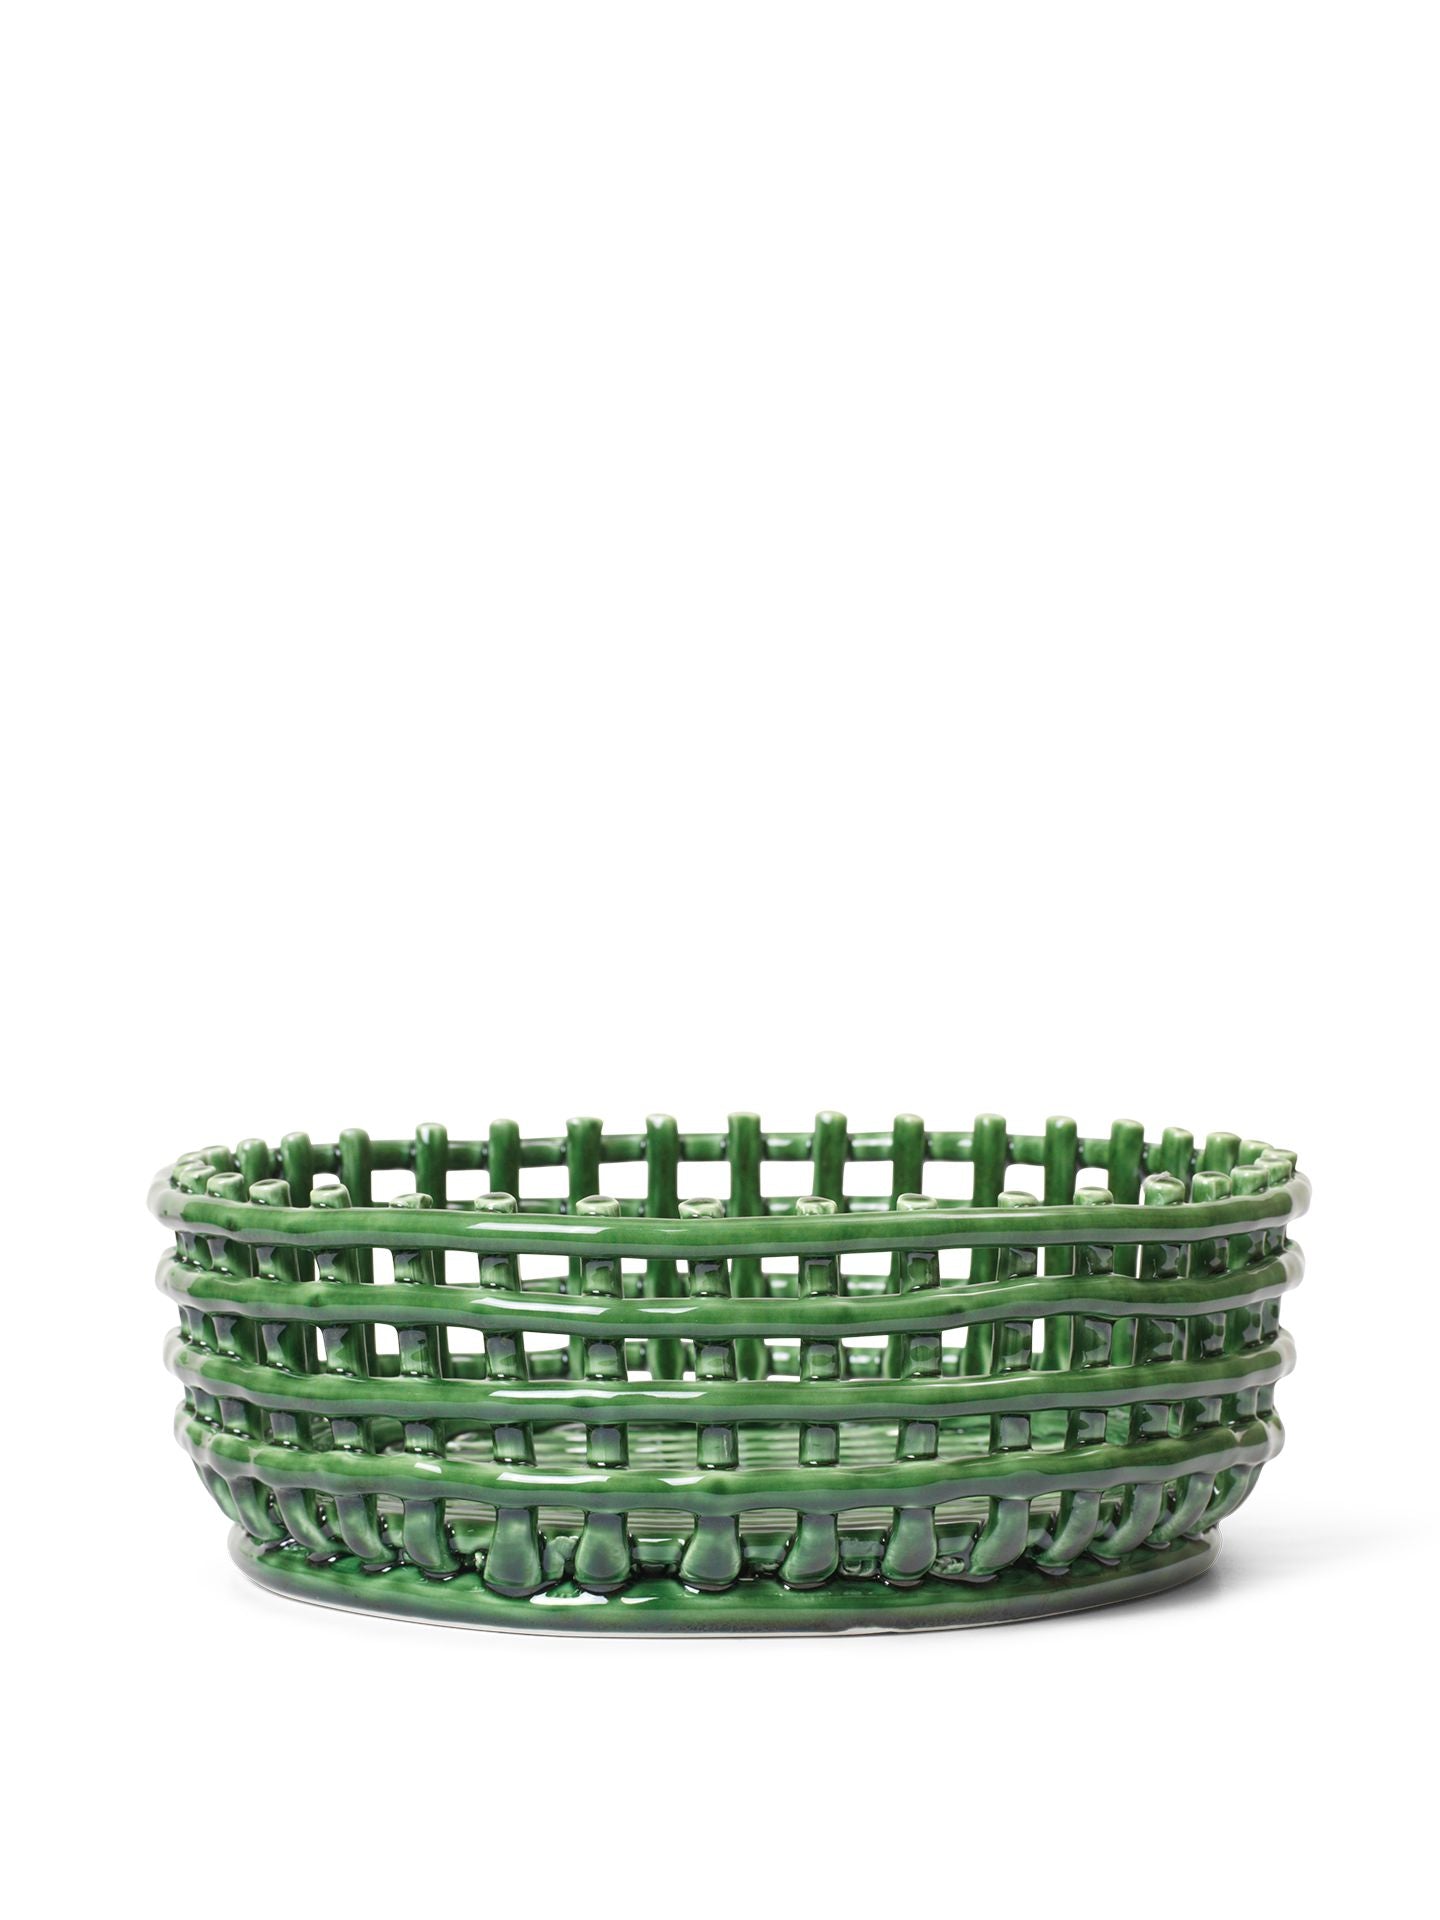 Pieza central de cerámica de vida ferma esmeralda verde